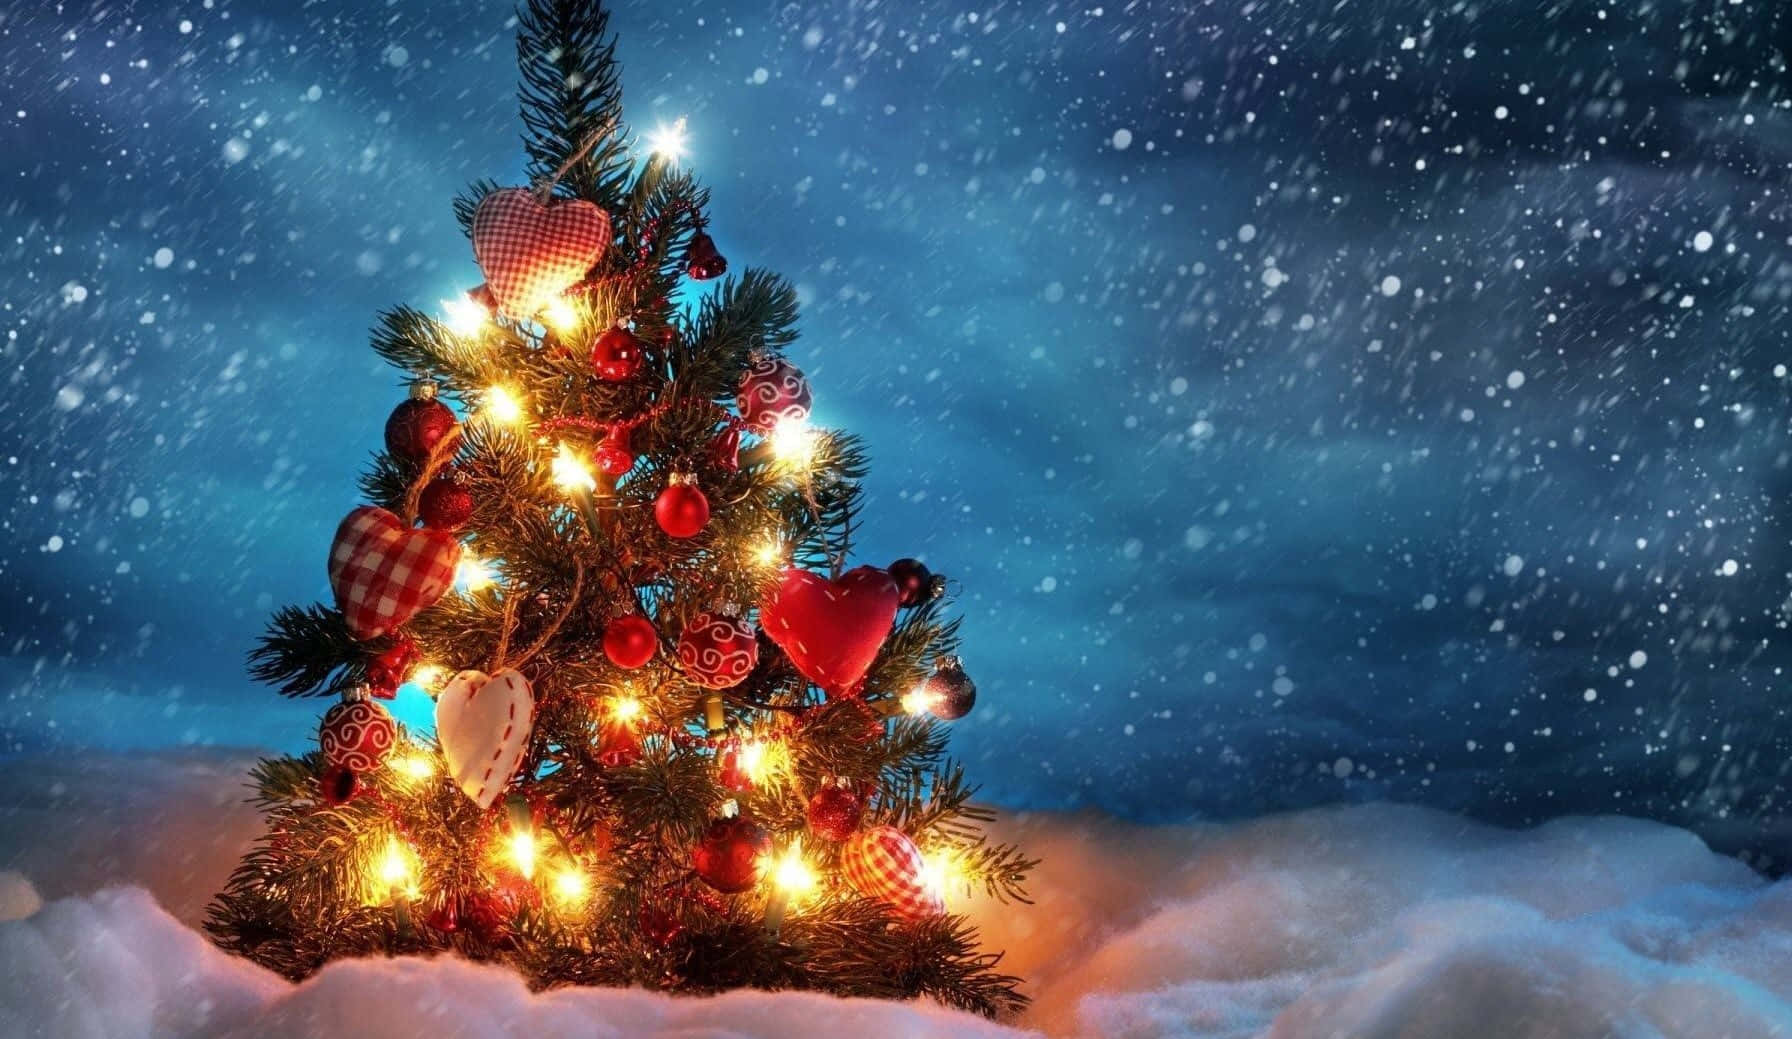 Feiernsie Weihnachten Mit Einem Magischen, Ästhetischen Baum. Wallpaper